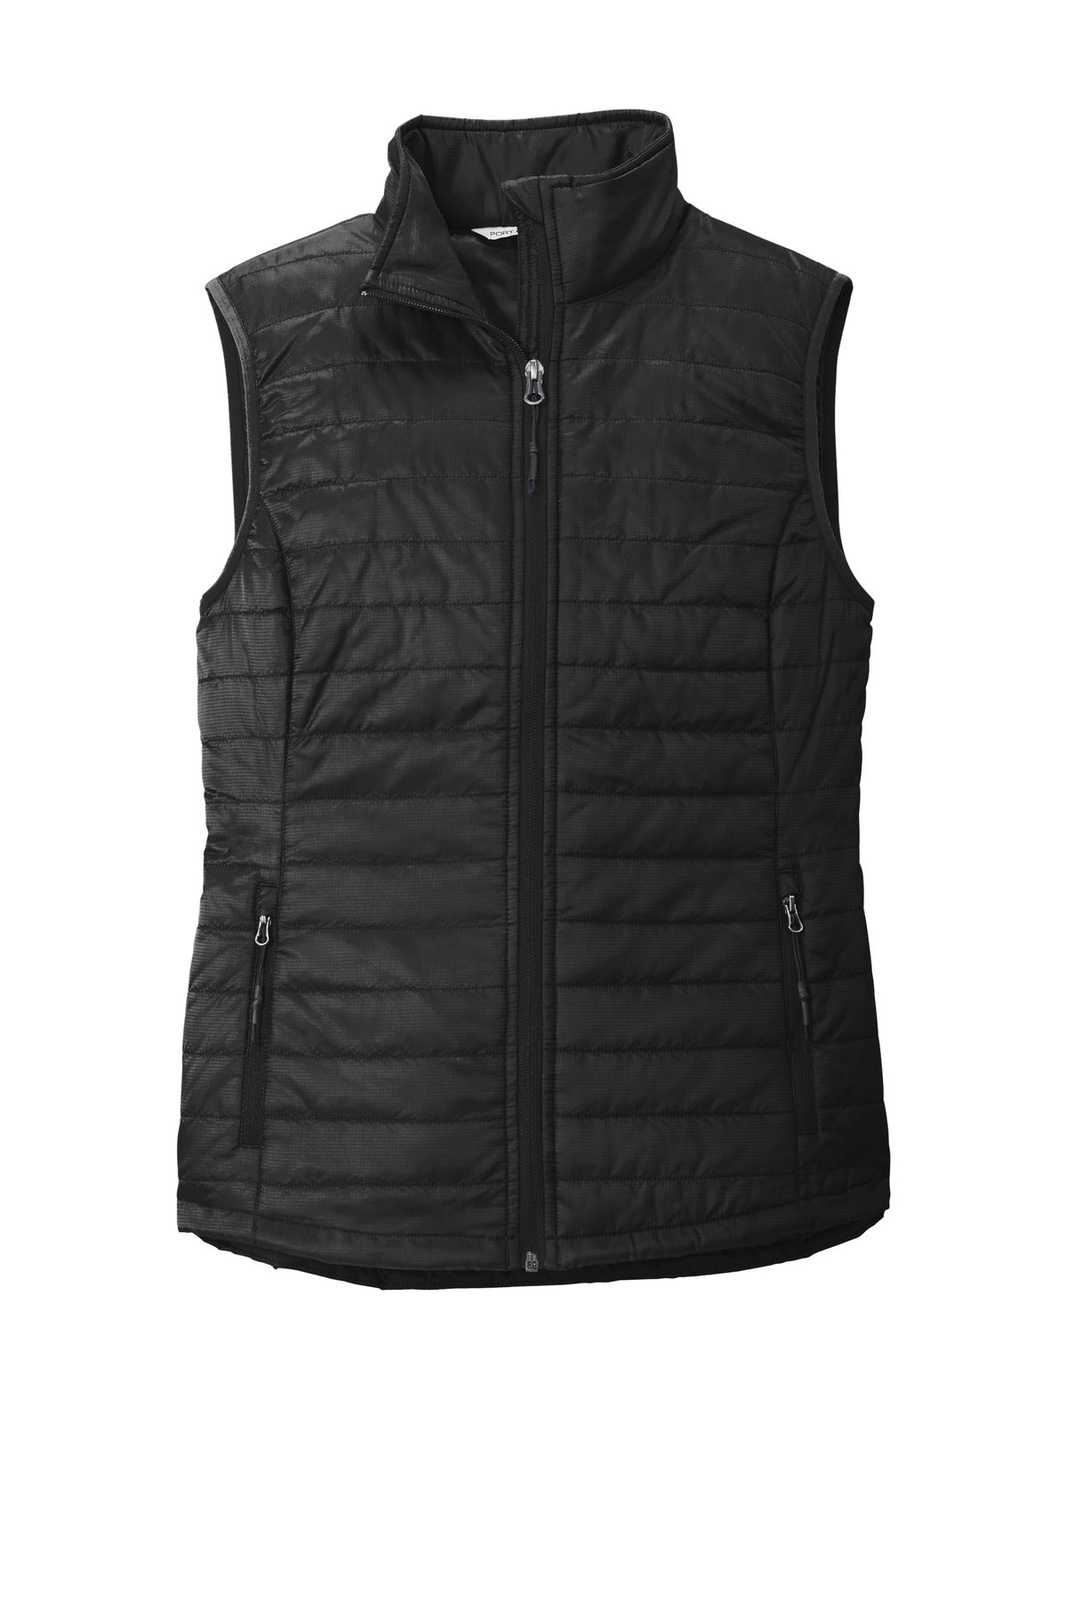 Port Authority L851 Ladies Packable Puffy Vest - Deep Black - HIT a Double - 5